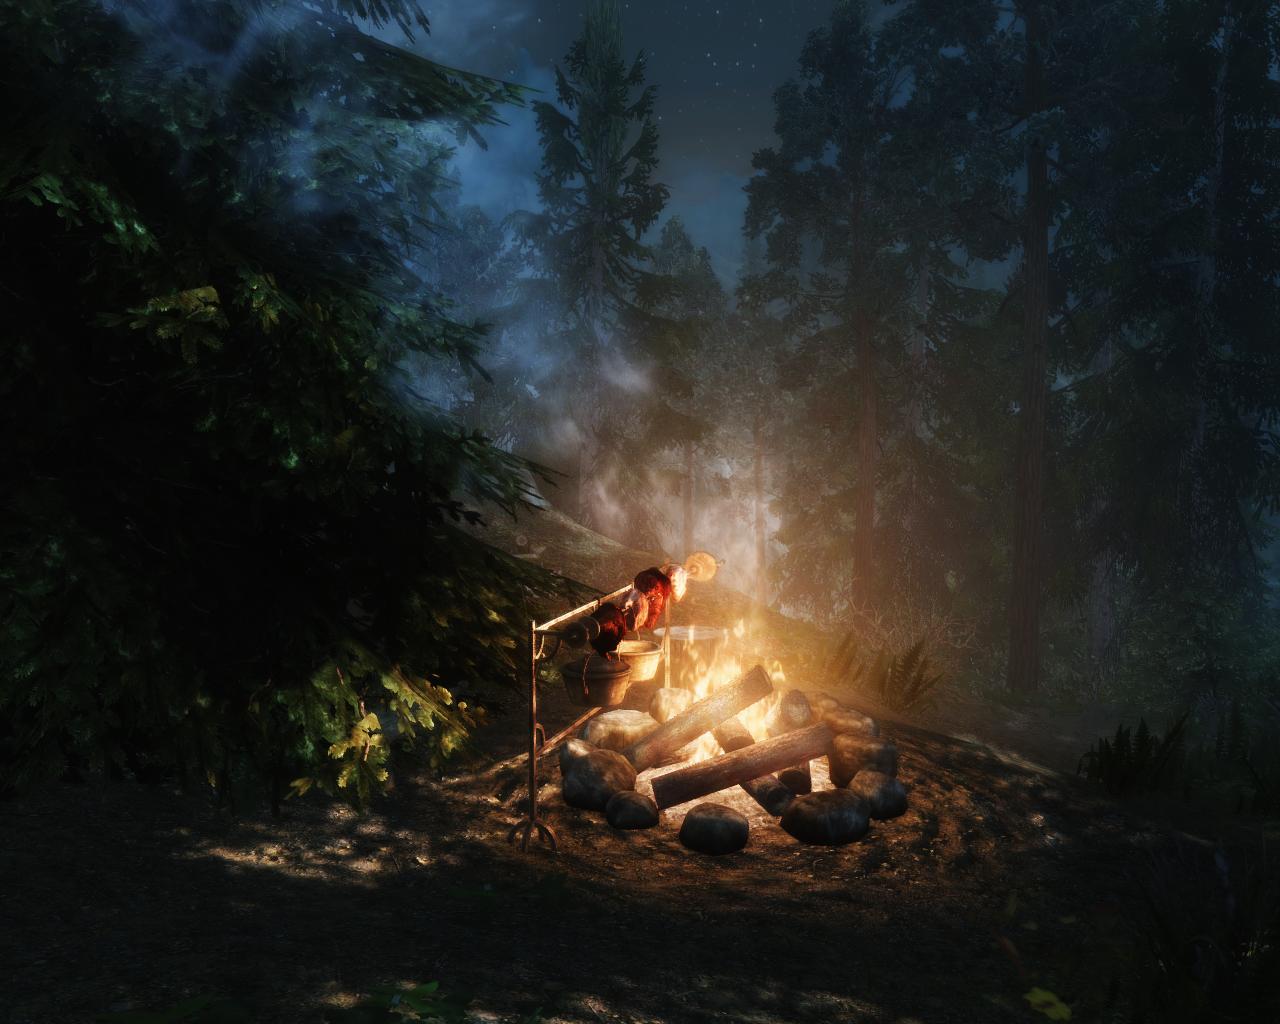 Благодаря компасу путники вышли на поляну. Лагерь у костра ДНД. Campfire скайрим. Скайрим лагерь у костра. Костёр в лесу ночью.